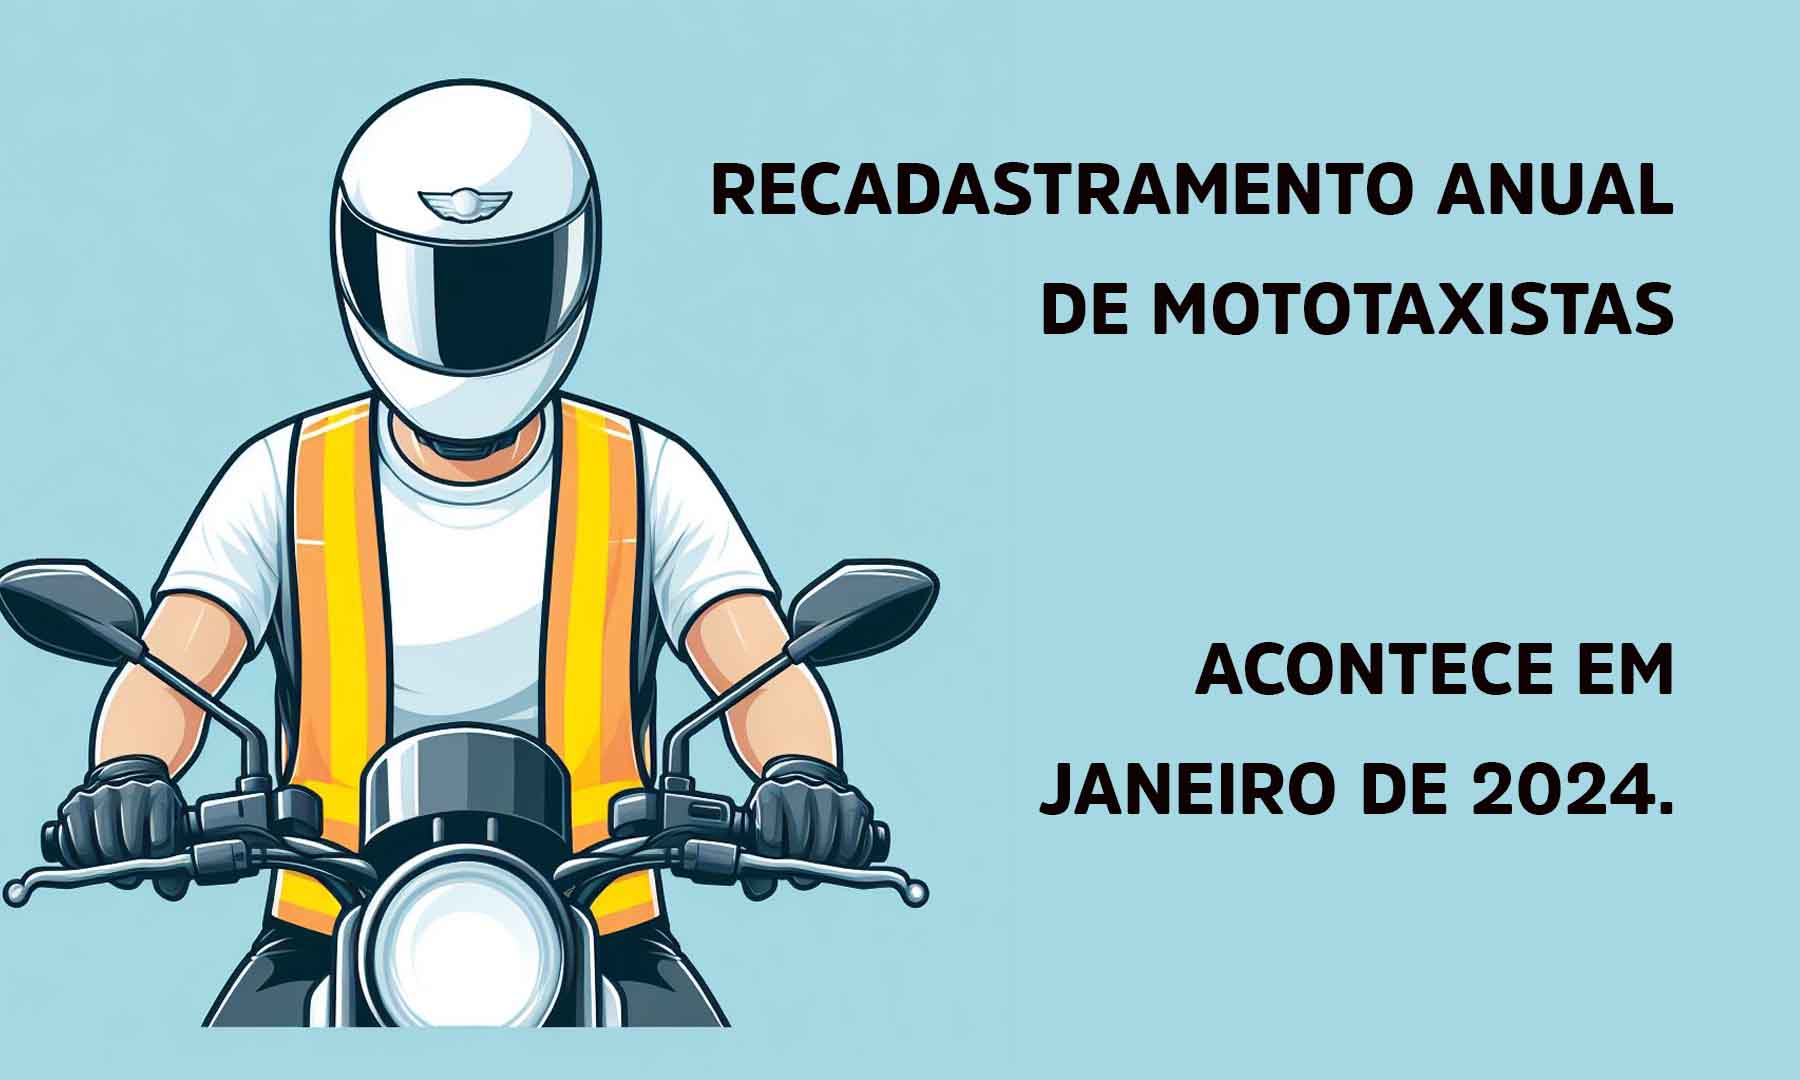 RECADASTRAMENTO ANUAL DE MOTOTAXISTAS ACONTECE EM JANEIRO DE 2024